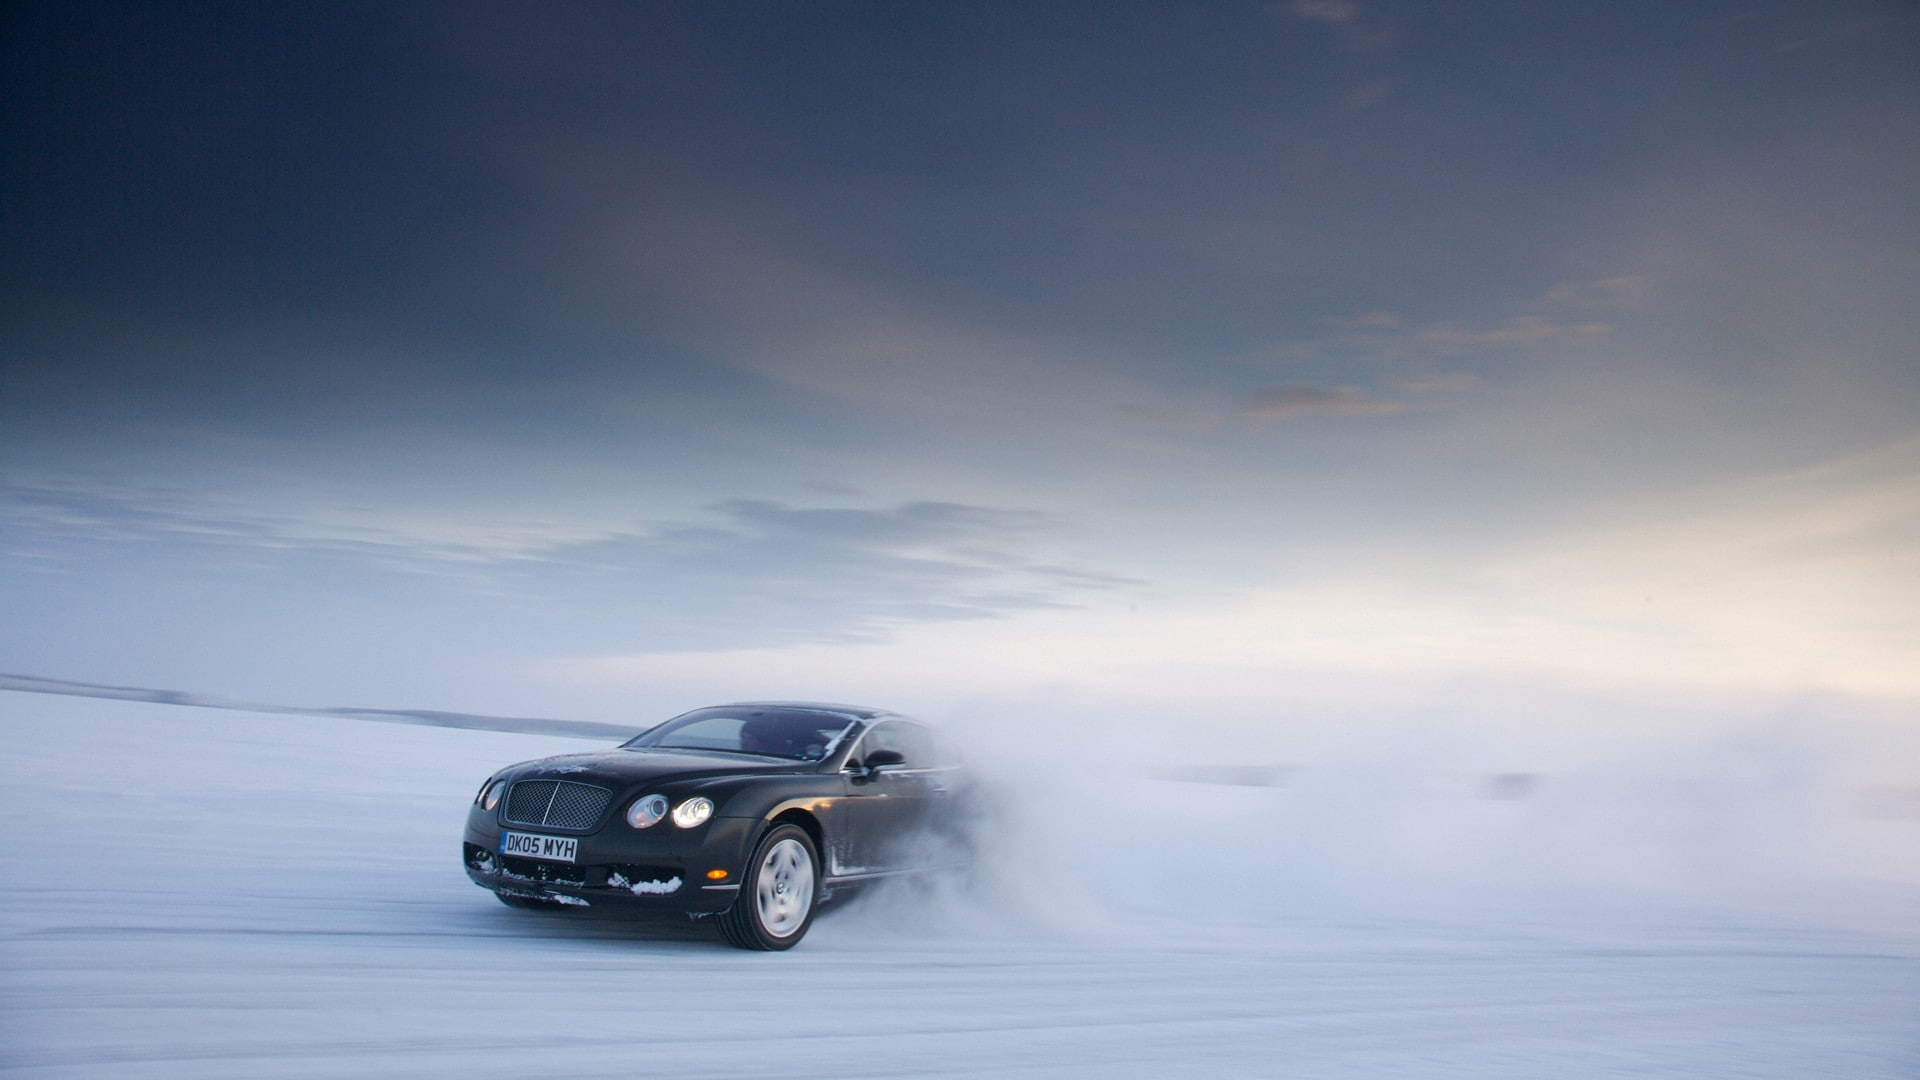 Bentley Continental Motion Blur Snow Winter Drift HD, cars